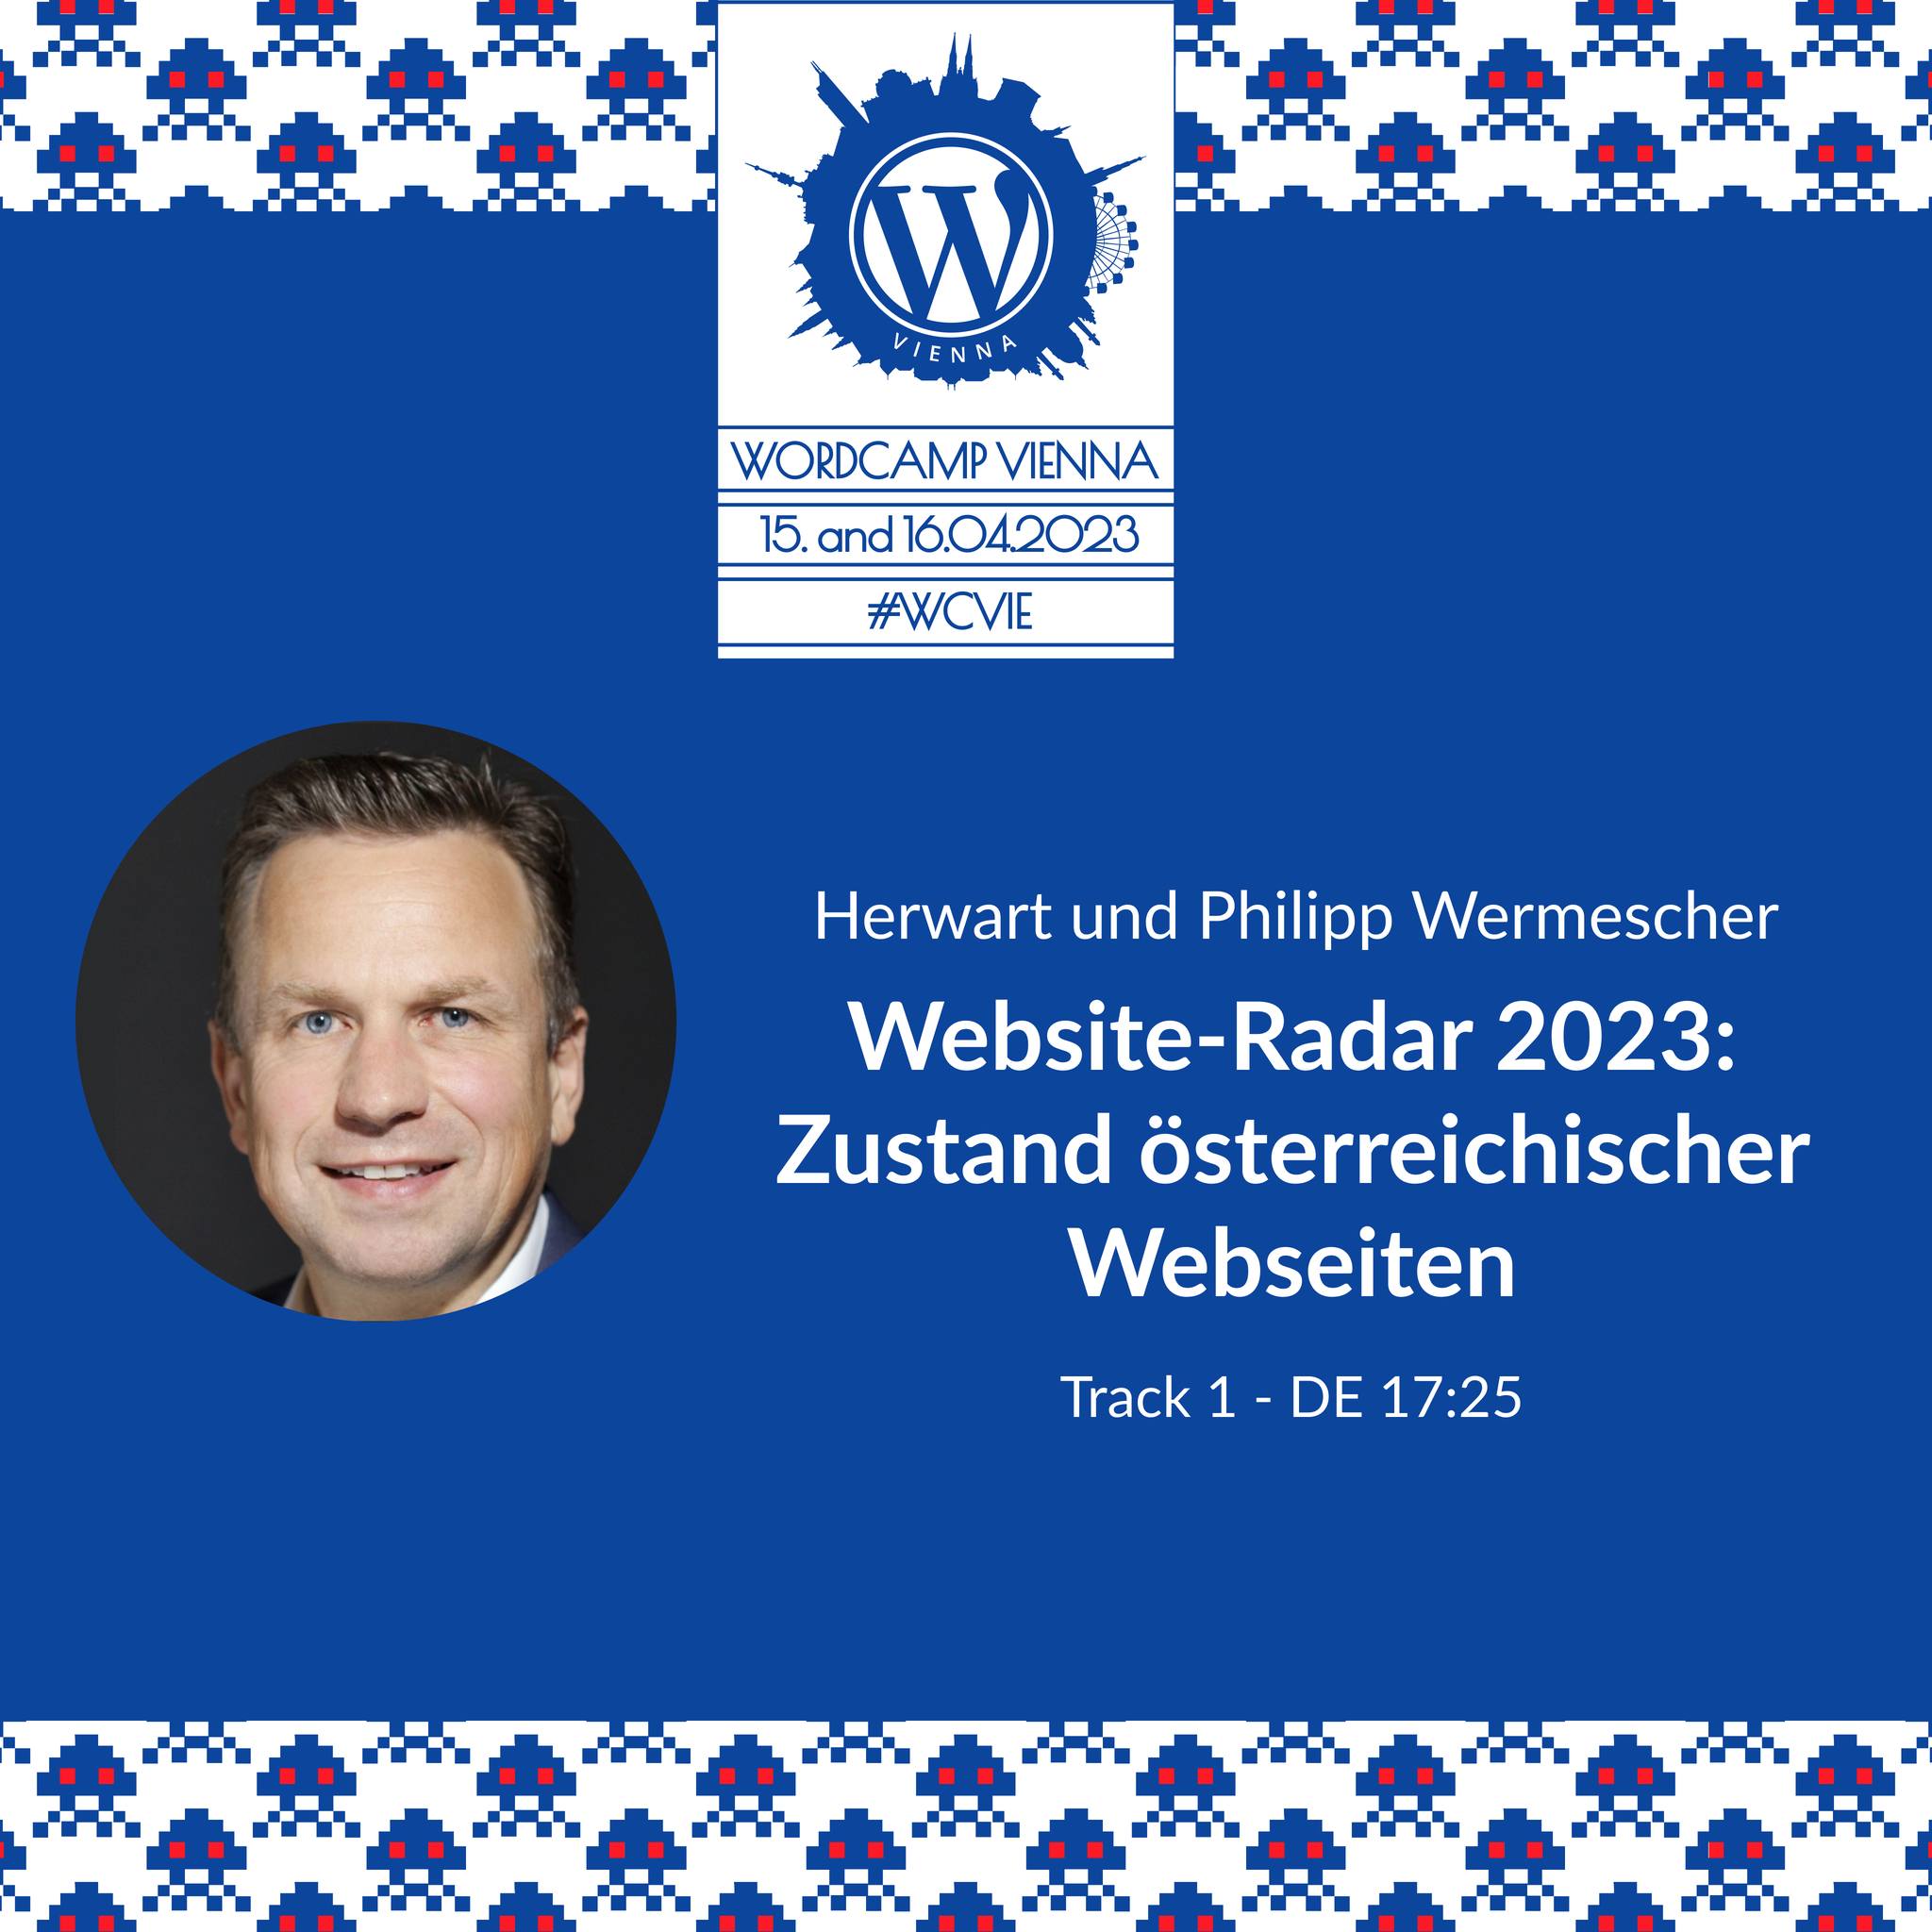 WordCamp Vienna 2023 - Website-Radar 2023: Zustand österreichischer Webseiten